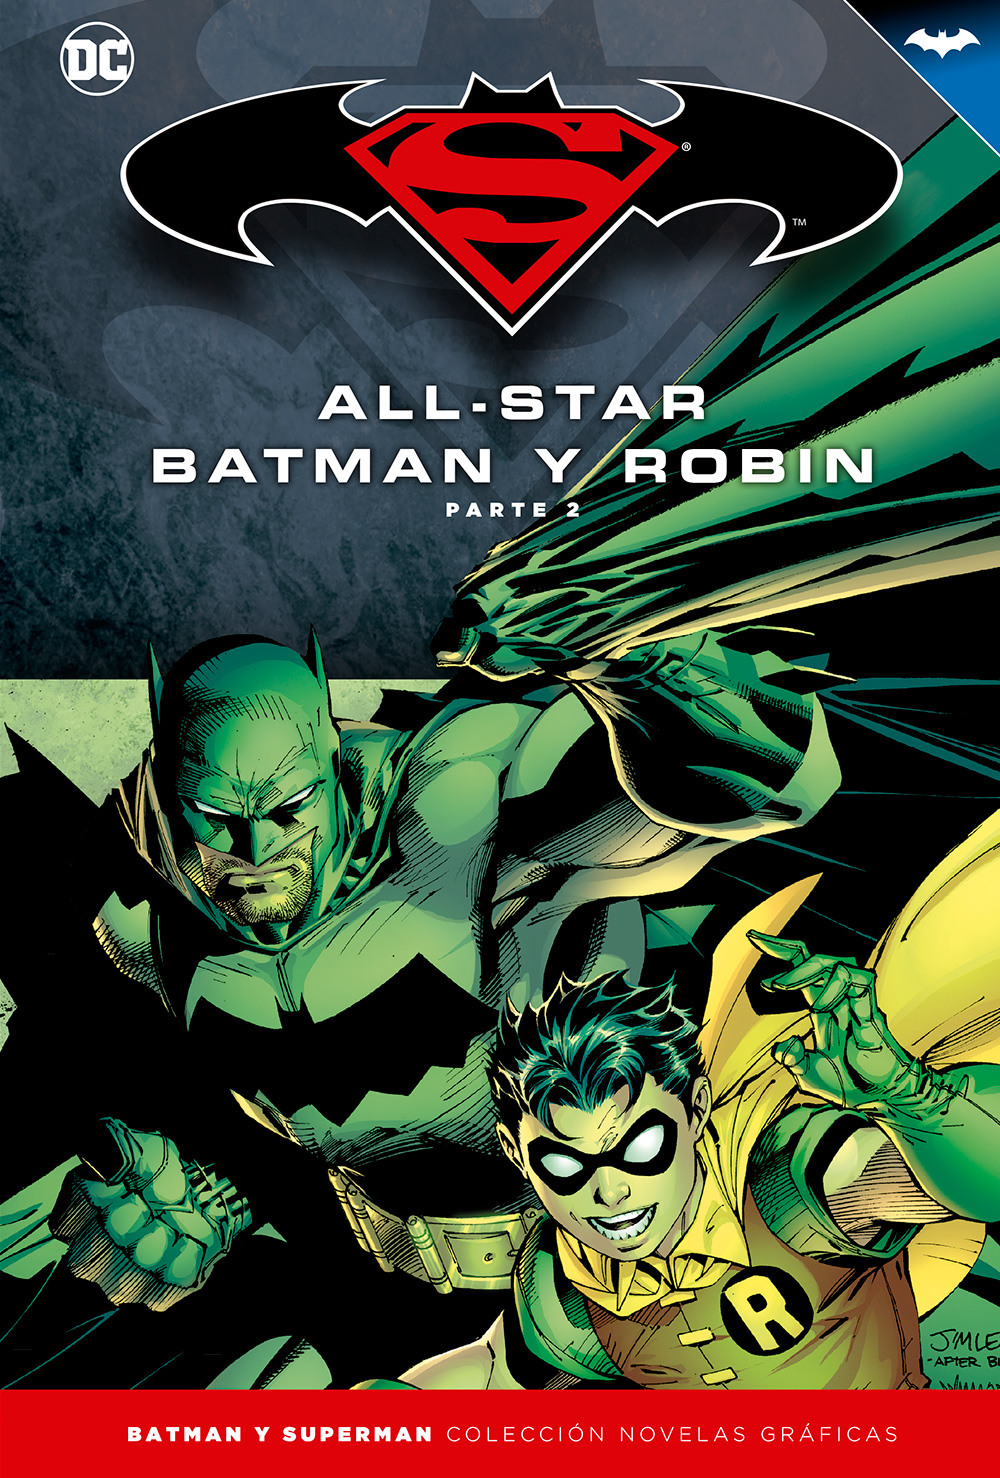 1-3 - [DC - Salvat] Batman y Superman: Colección Novelas Gráficas - Página 3 Portada_BMSM_3_AllStarBatman2